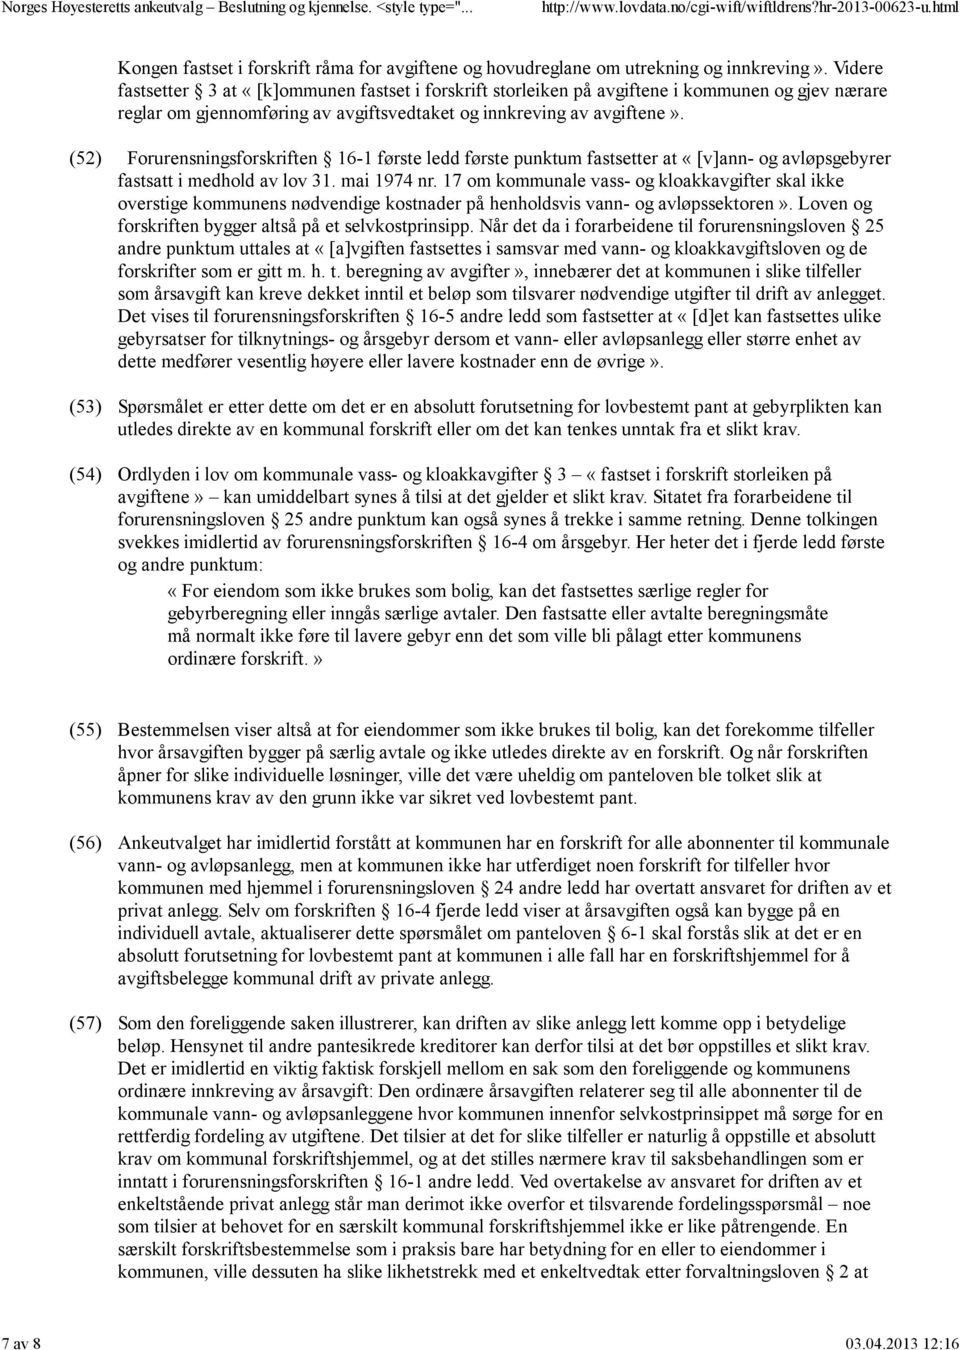 (52) (53) (54) Forurensningsforskriften 16-1 første ledd første punktum fastsetter at «[v]ann- og avløpsgebyrer fastsatt i medhold av lov 31. mai 1974 nr.